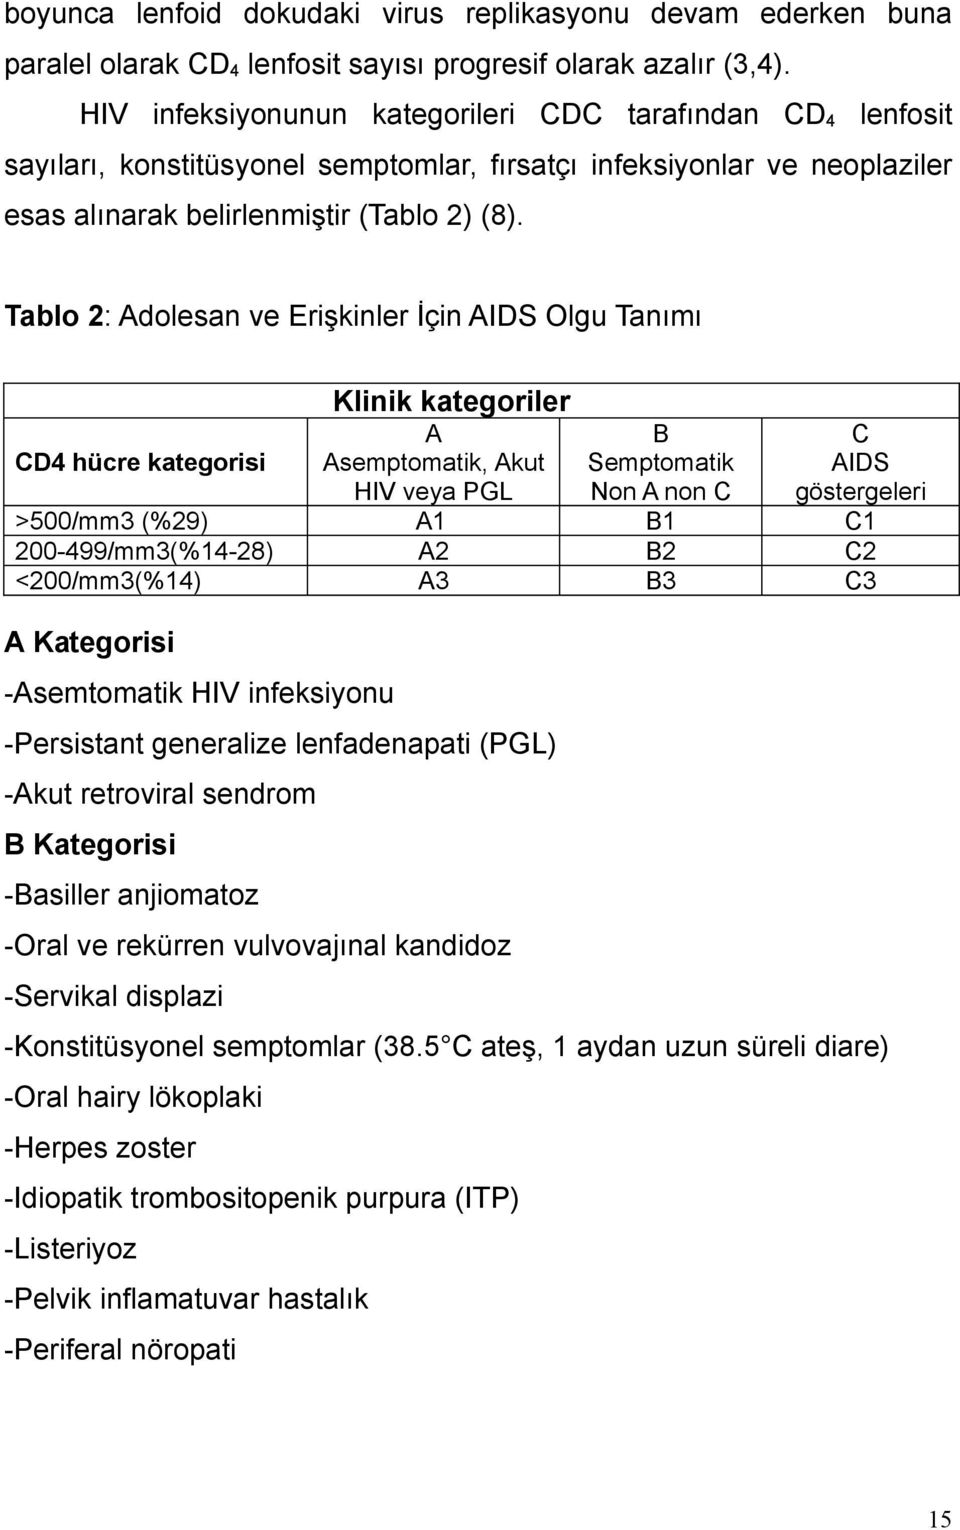 Tablo 2: Adolesan ve Erişkinler İçin AIDS Olgu Tanımı Klinik kategoriler CD4 hücre kategorisi A Asemptomatik, Akut HIV veya PGL B Semptomatik Non A non C C AIDS göstergeleri >500/mm3 (%29) A1 B1 C1